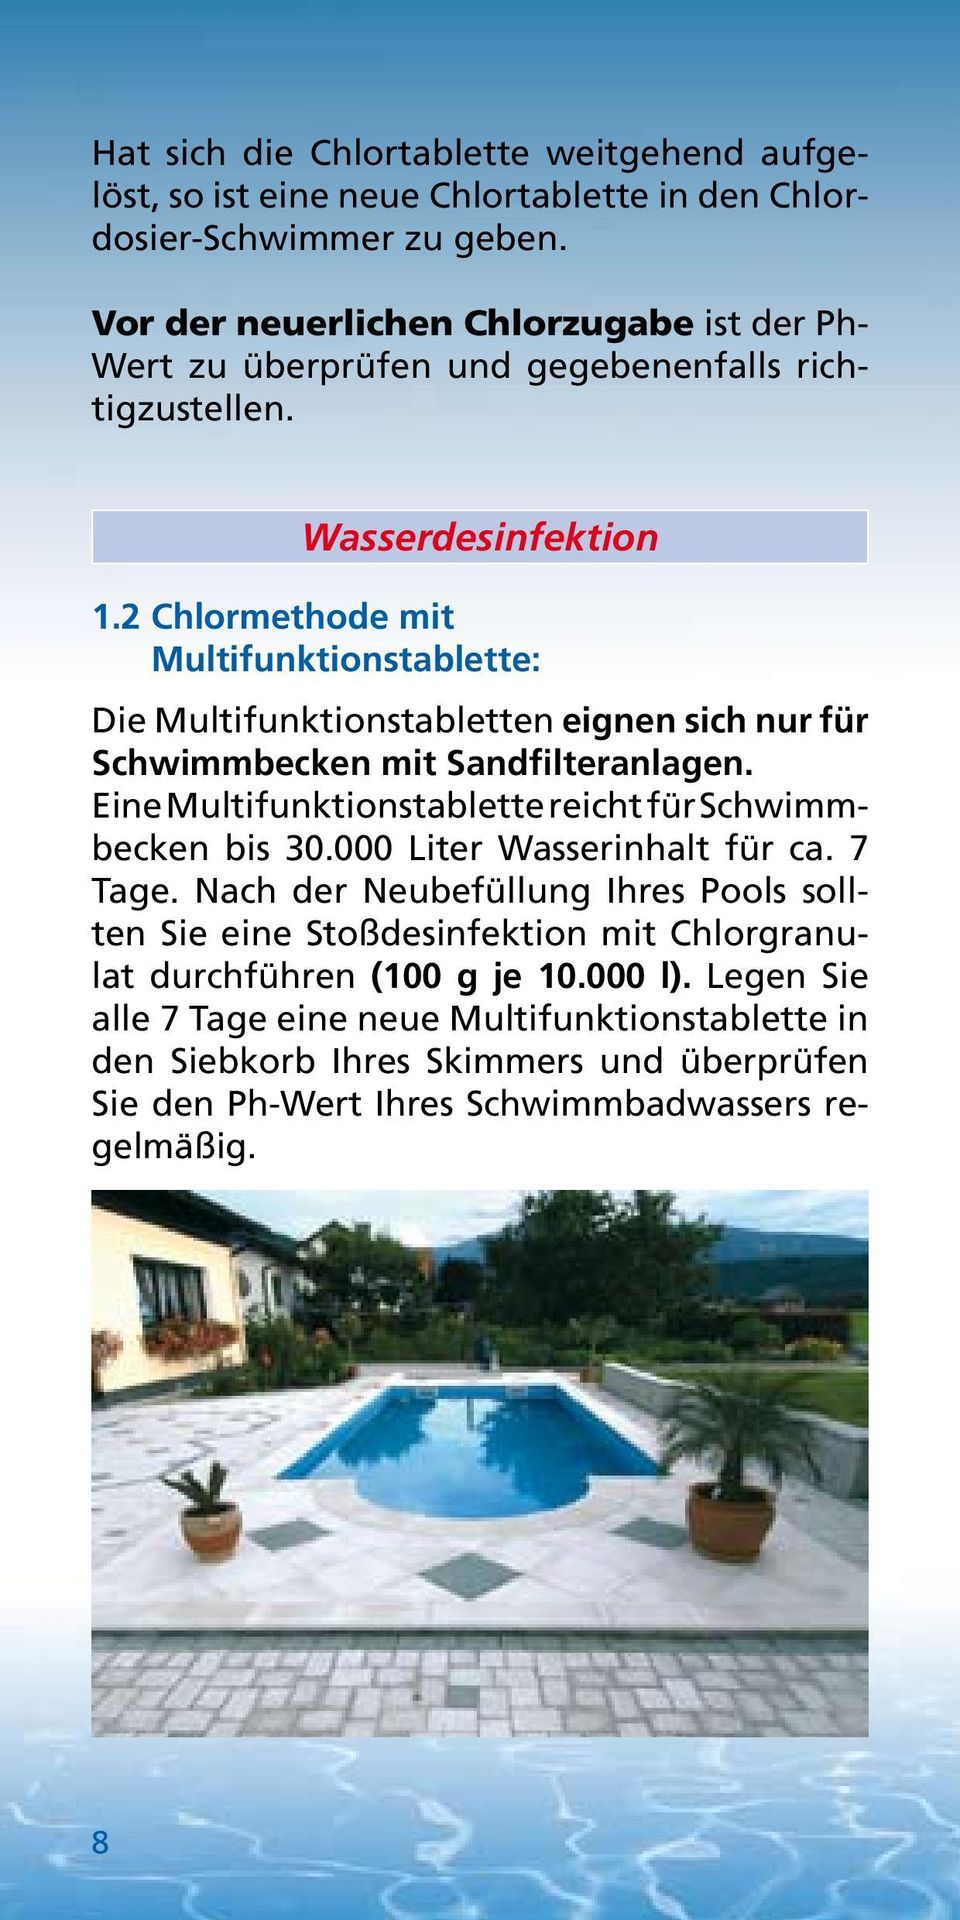 2 Chlormethode mit Multifunktionstablette: Die Multifunktionstabletten eignen sich nur für Schwimmbecken mit Sandfilteranlagen.